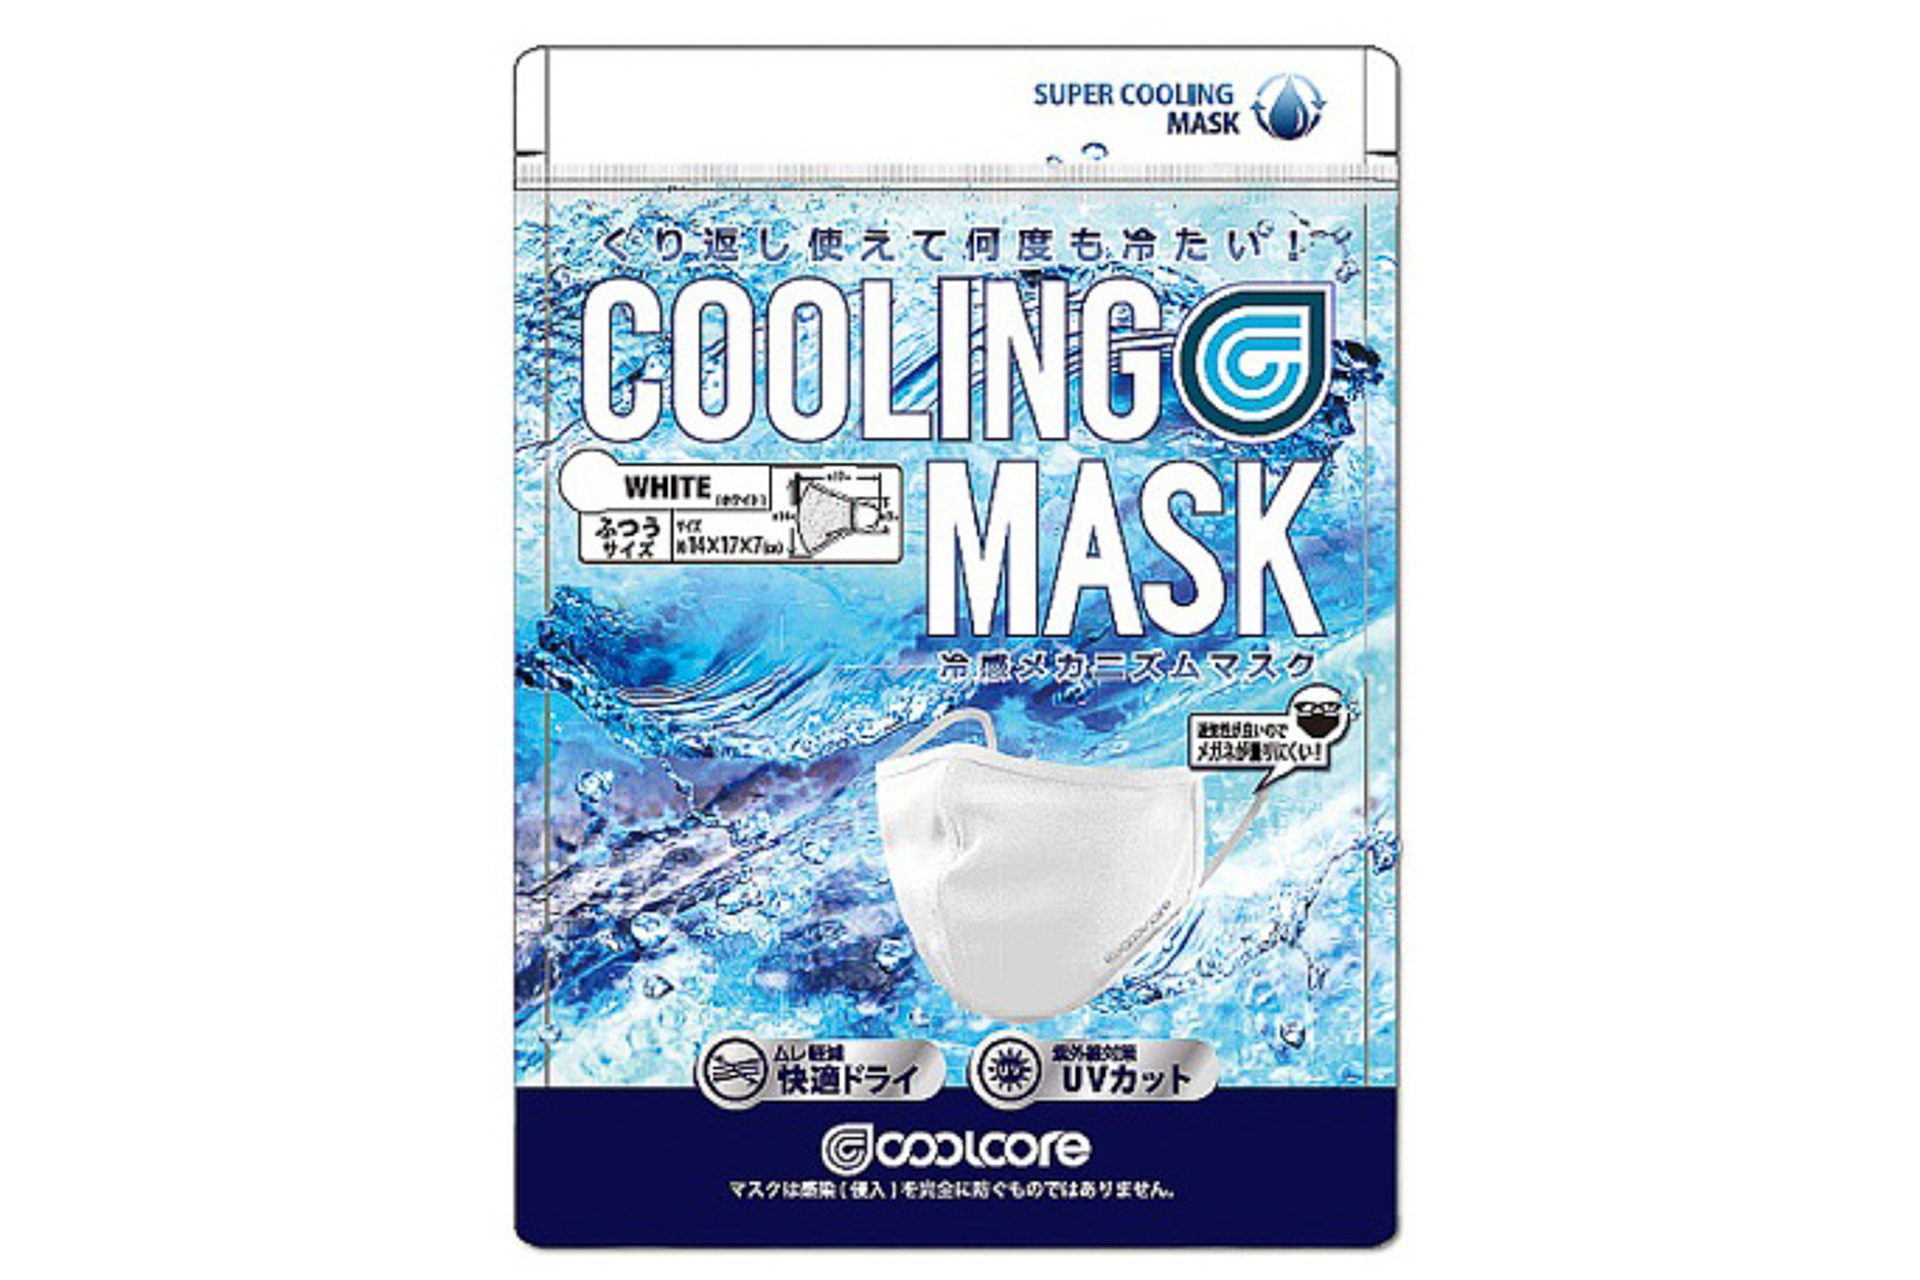 セブン-イレブン、夏マスク3種を発売。冷感素材やUVカット加工など